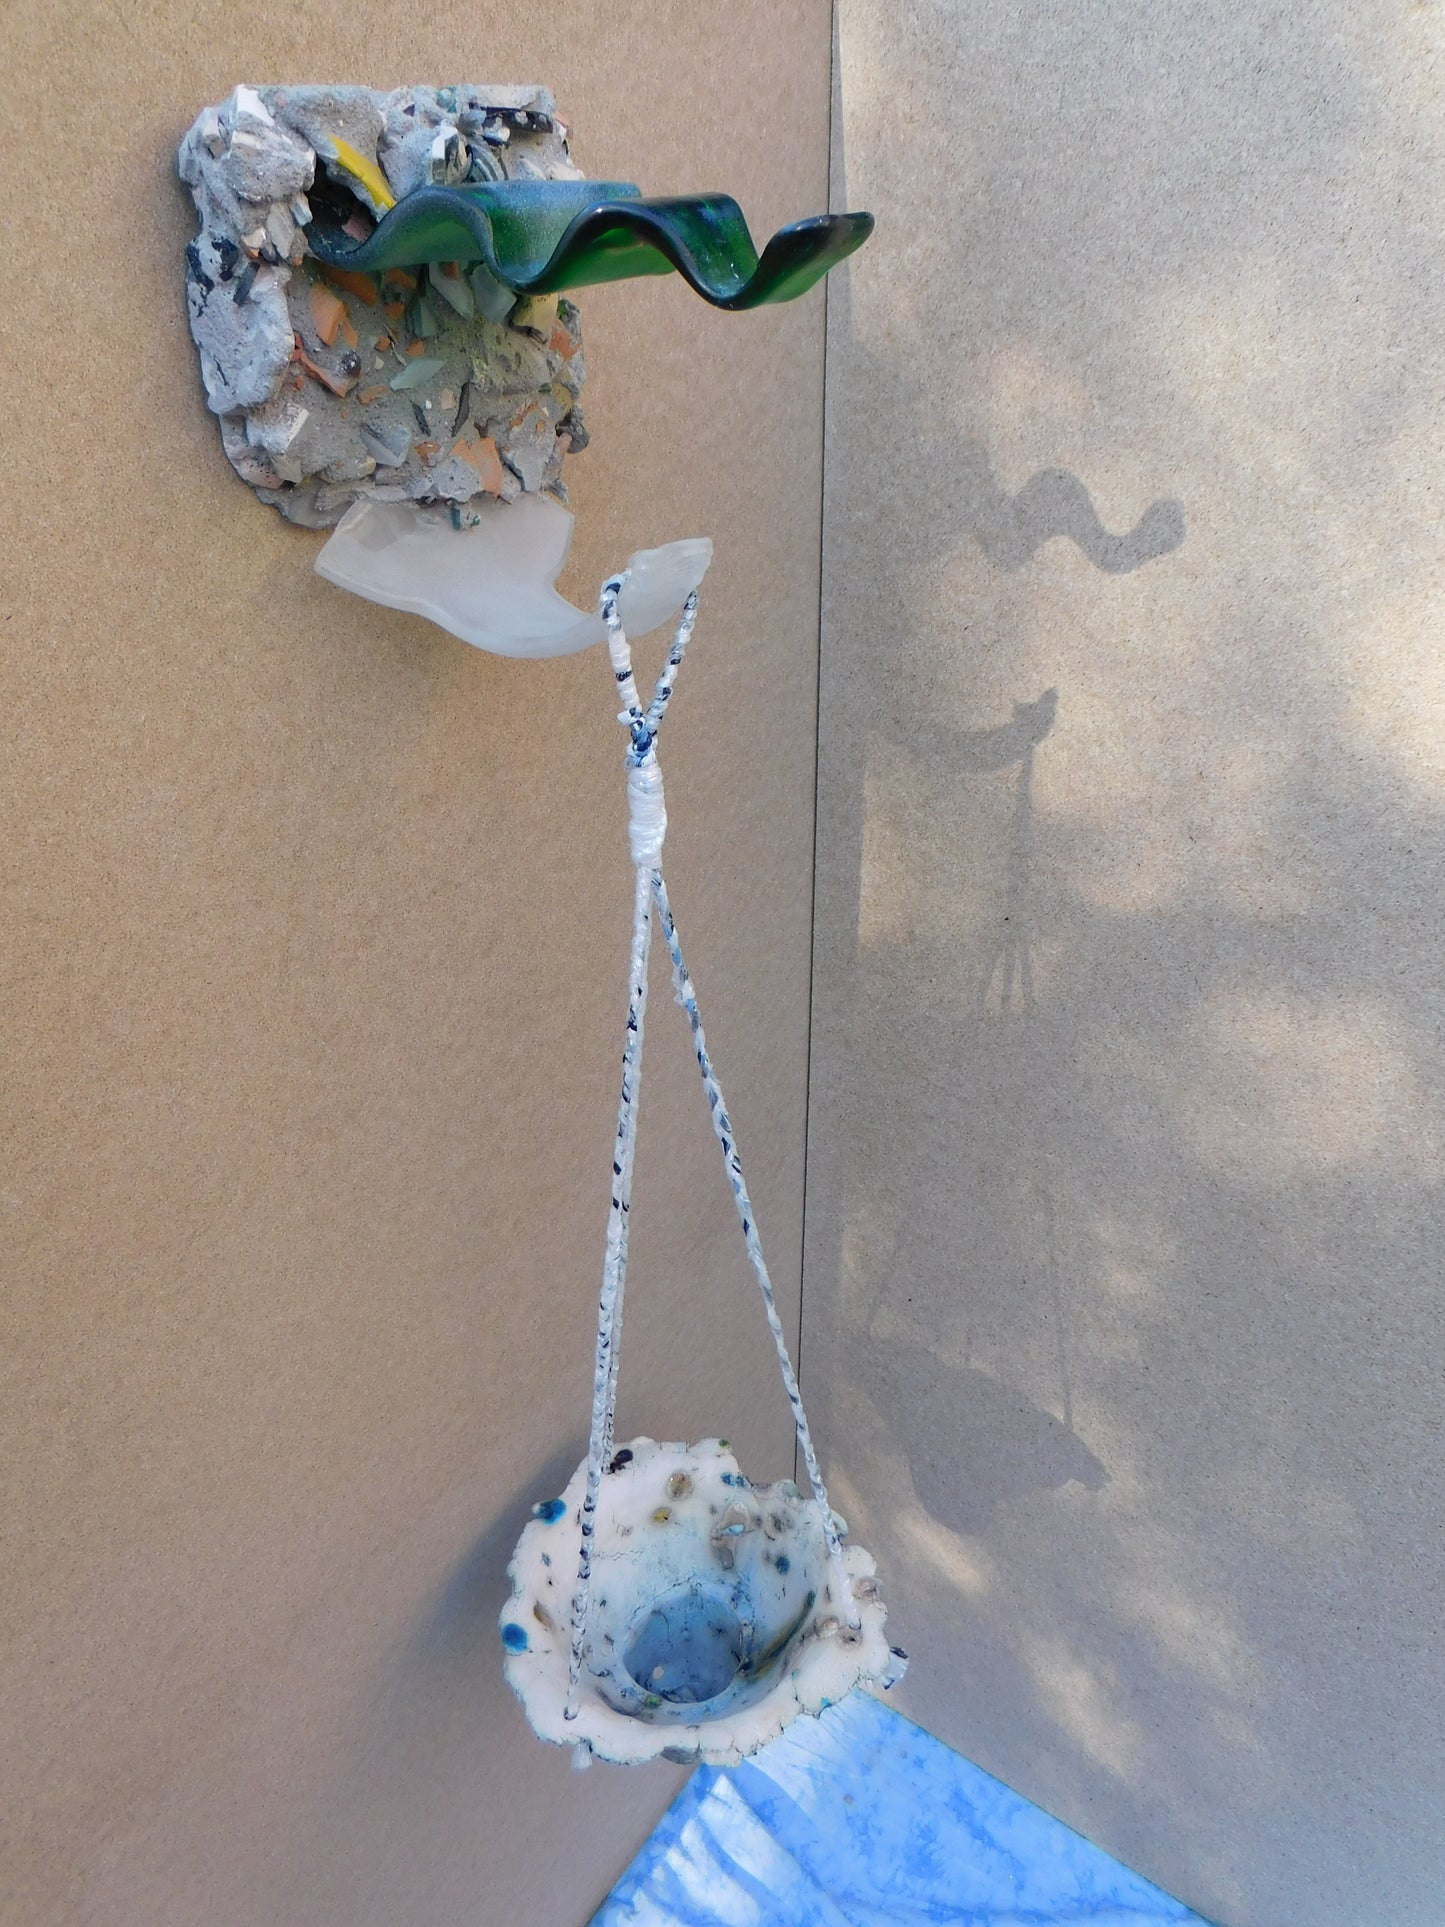 Bottleneck Wall Hook Sculpture- Recycled Art